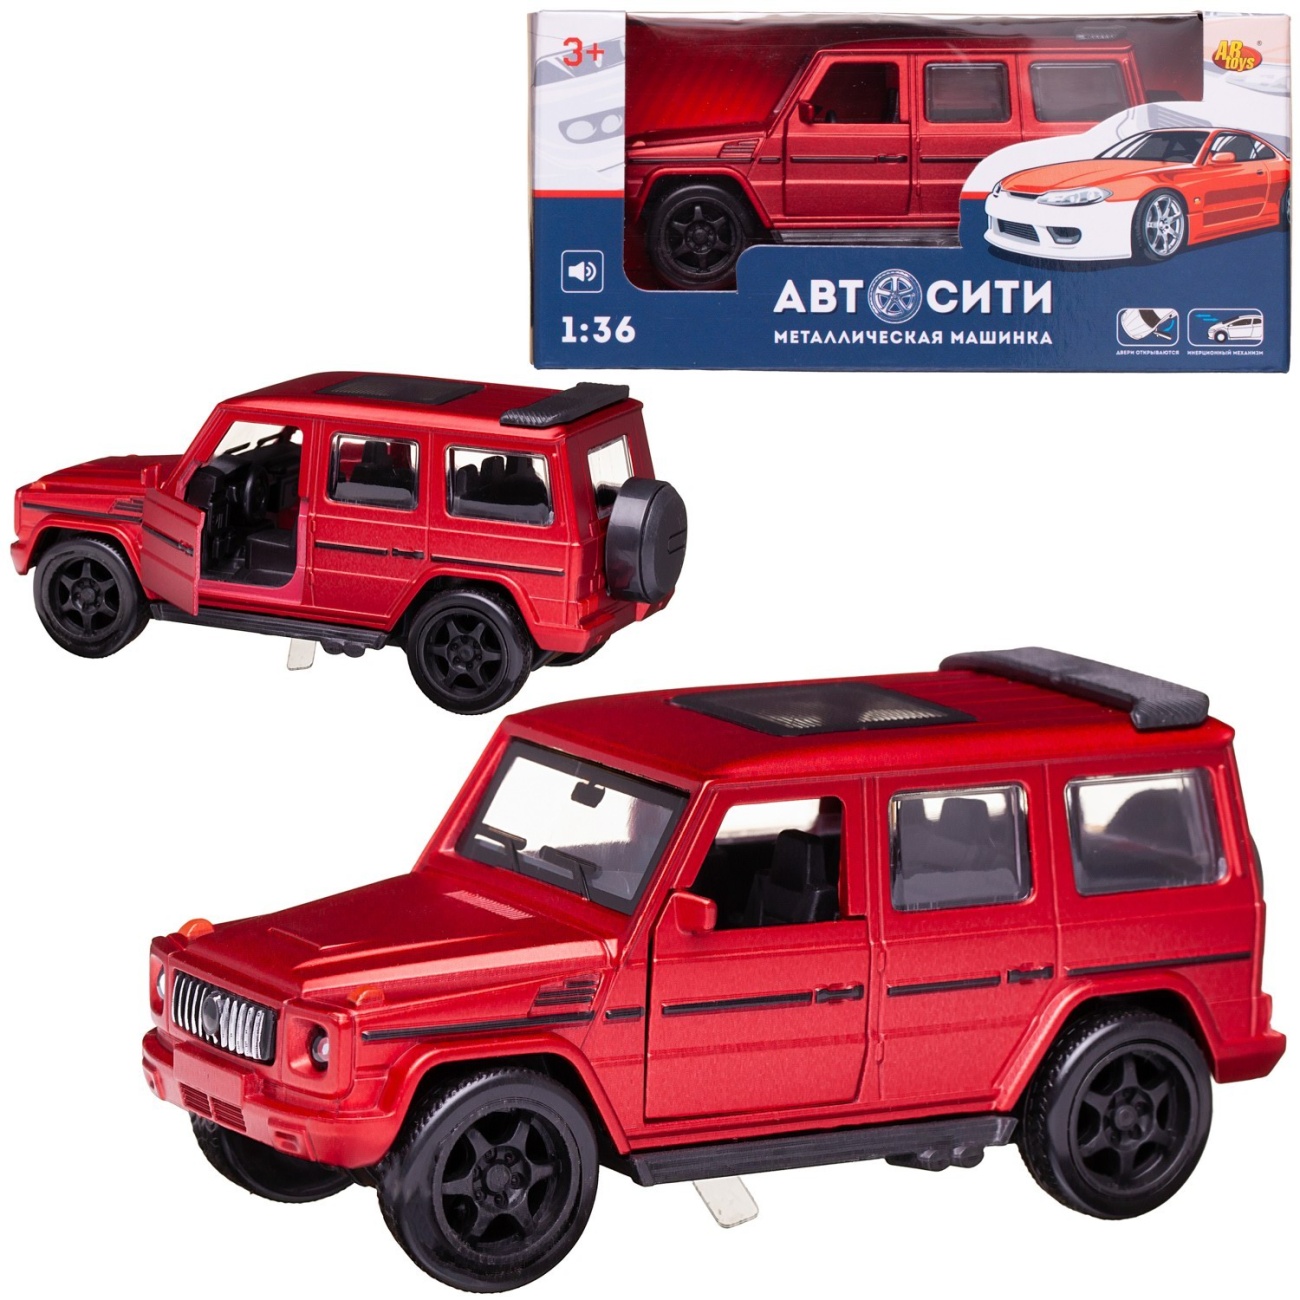 Машинка металл Abtoys АвтоСити 1:36 Внедорожник инерция, двери откр., красный свет/звук C-00521/красный